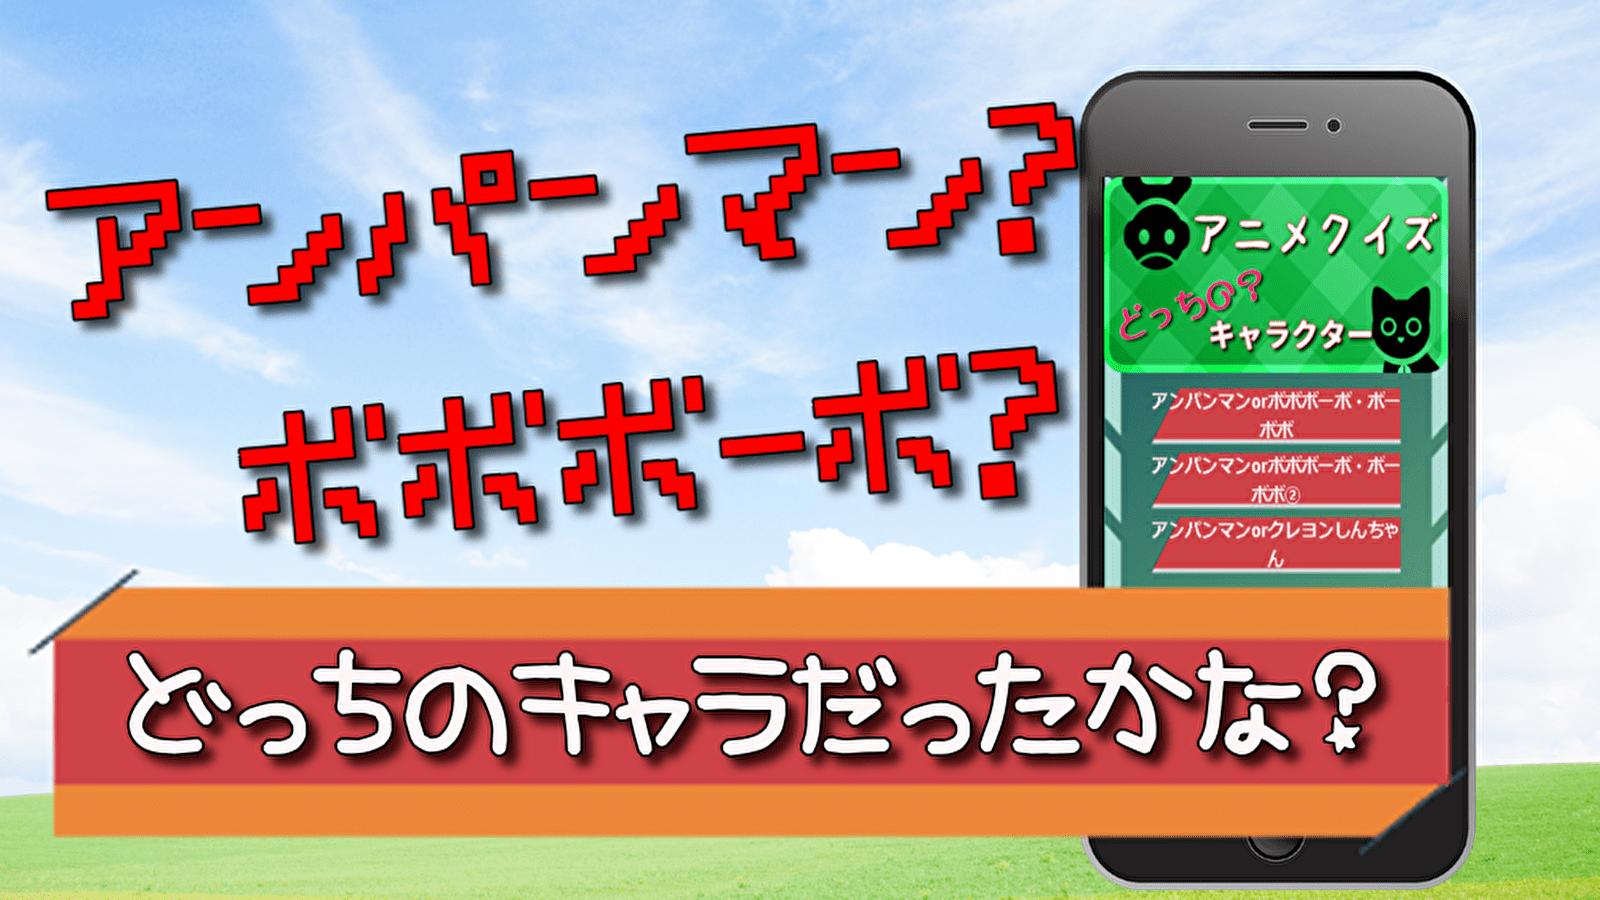 アニメクイズ ドッチのキャラクター 無料ゲームアプリ Cho Android Tải Về Apk